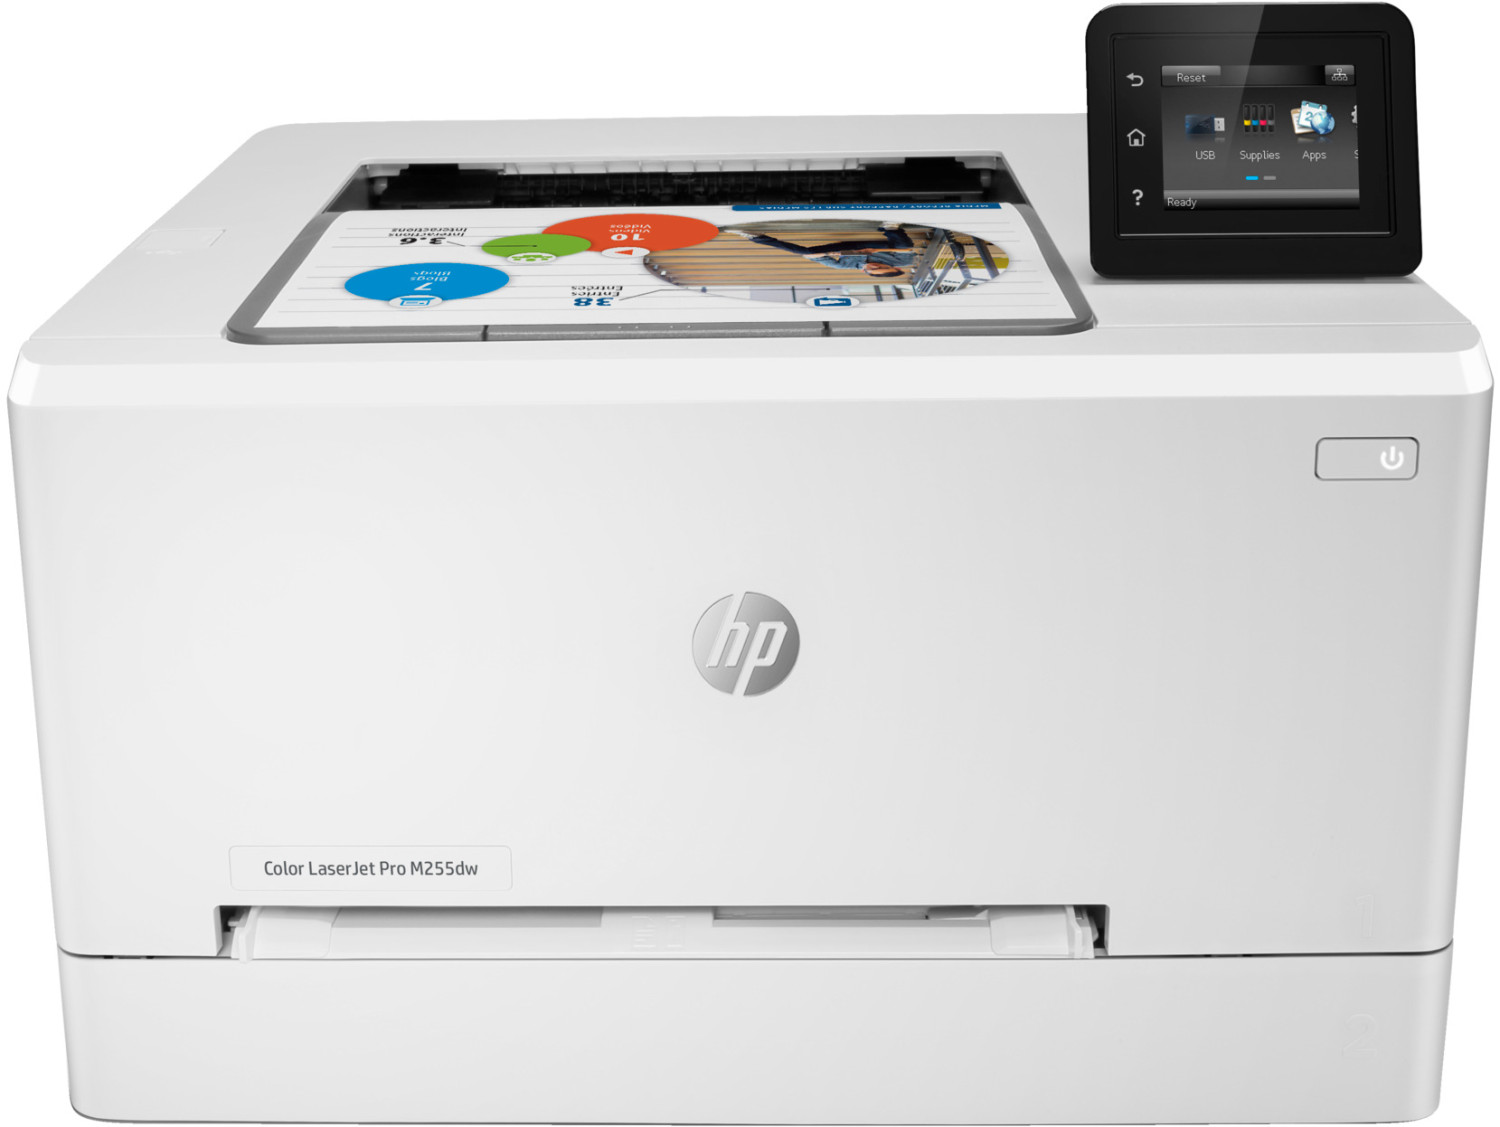 HP Color LaserJet Pro M255dw Wireless Printer, 7KW64A